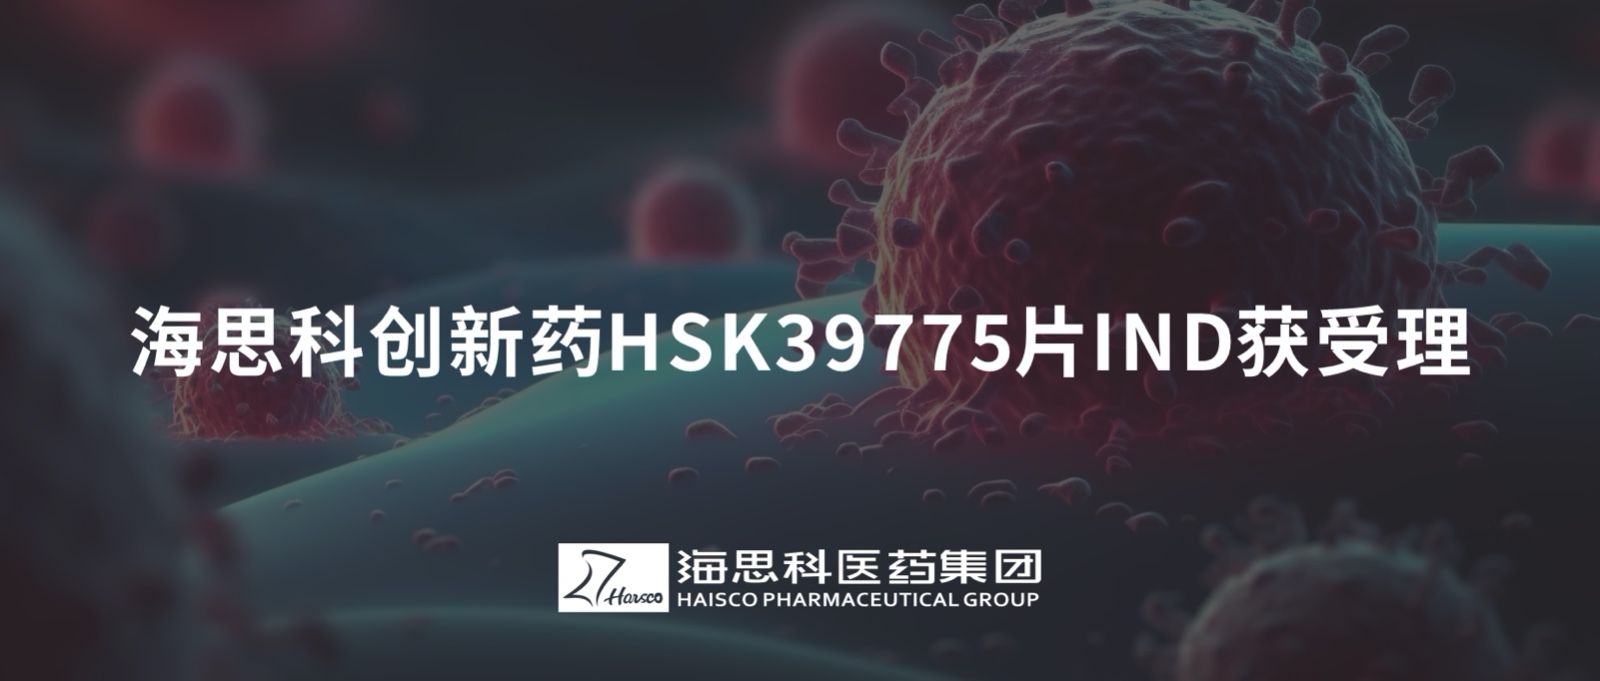 365体育中国官方网站创新药HSK39775片IND获受理